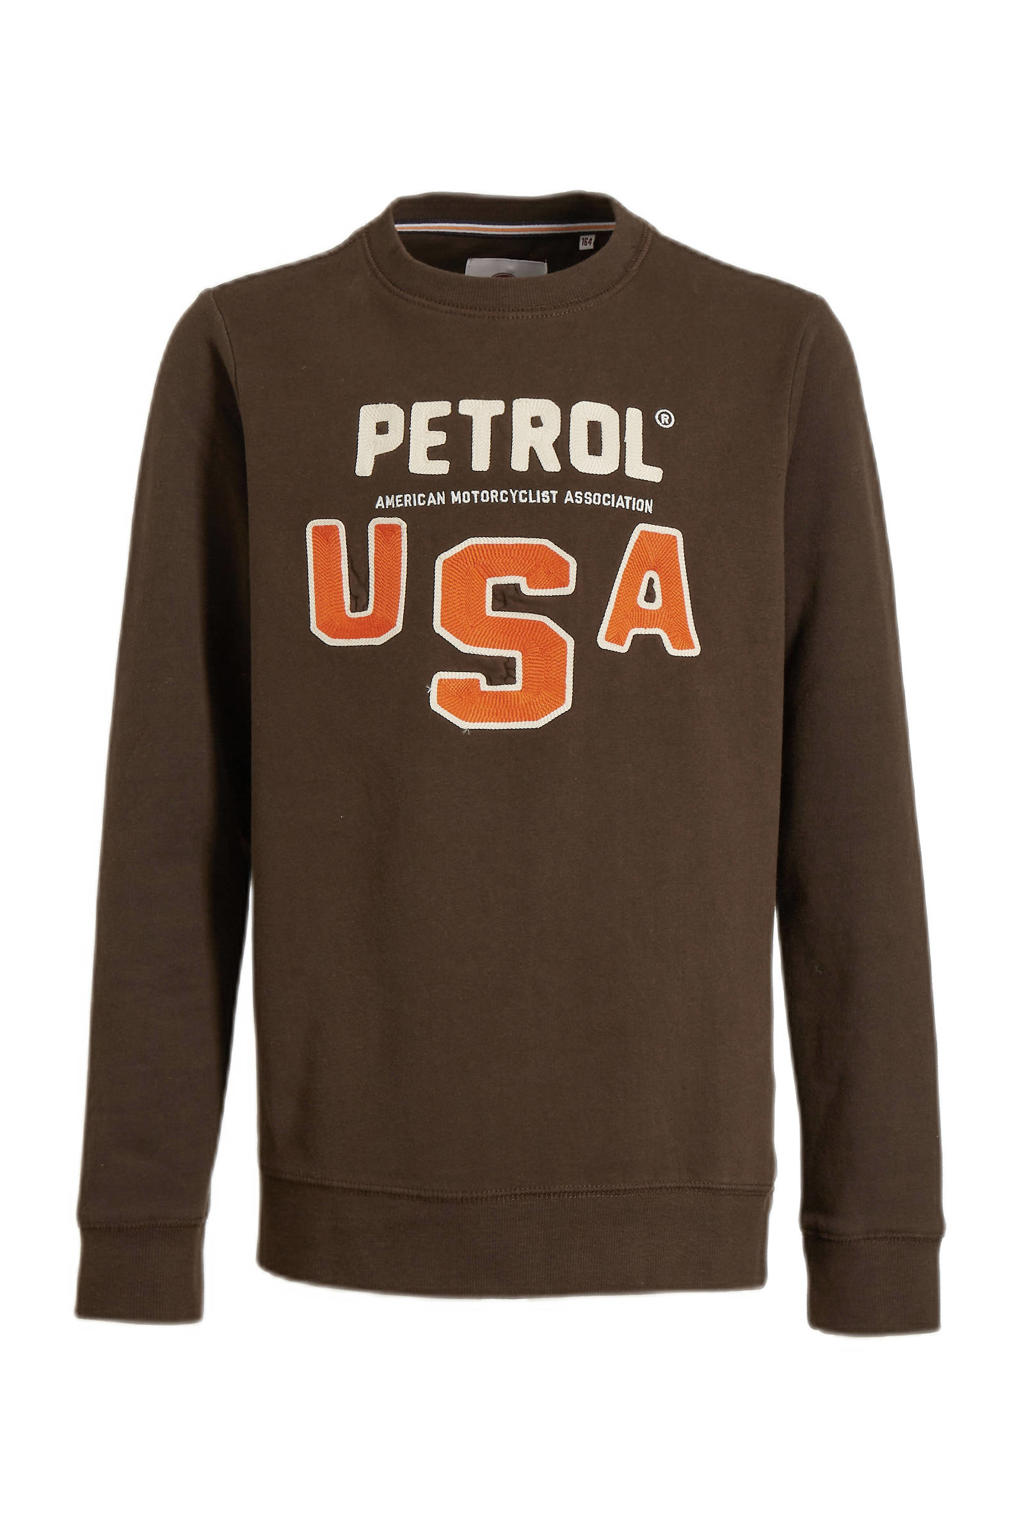 Bruine jongens Petrol Industries sweater met logo dessin, lange mouwen en ronde hals